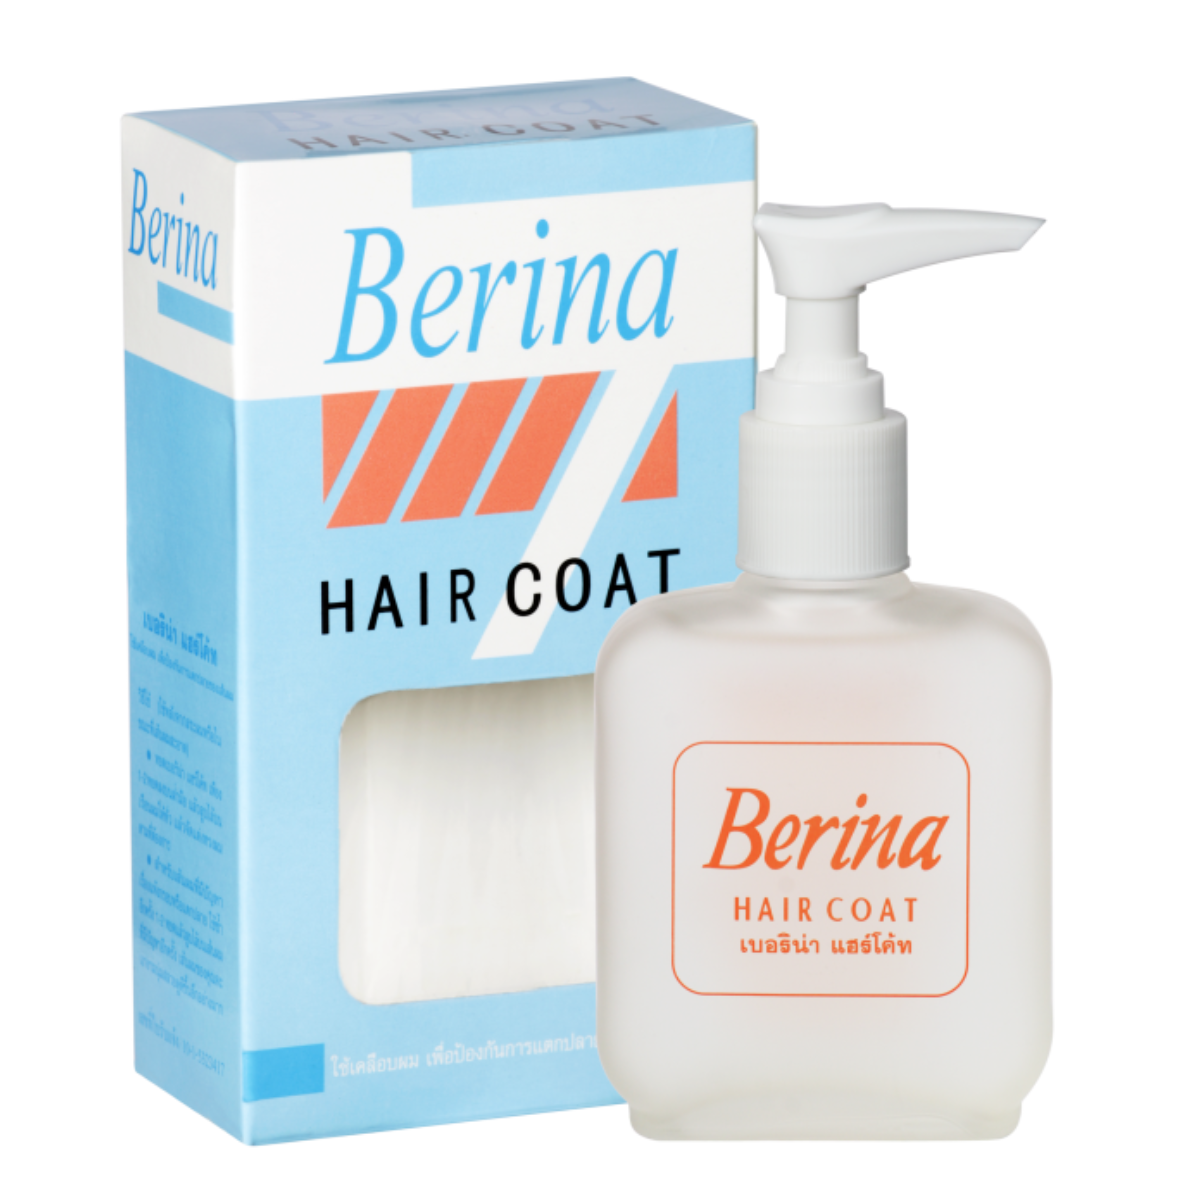 Berina Hair Coat - UV Protection and Shine